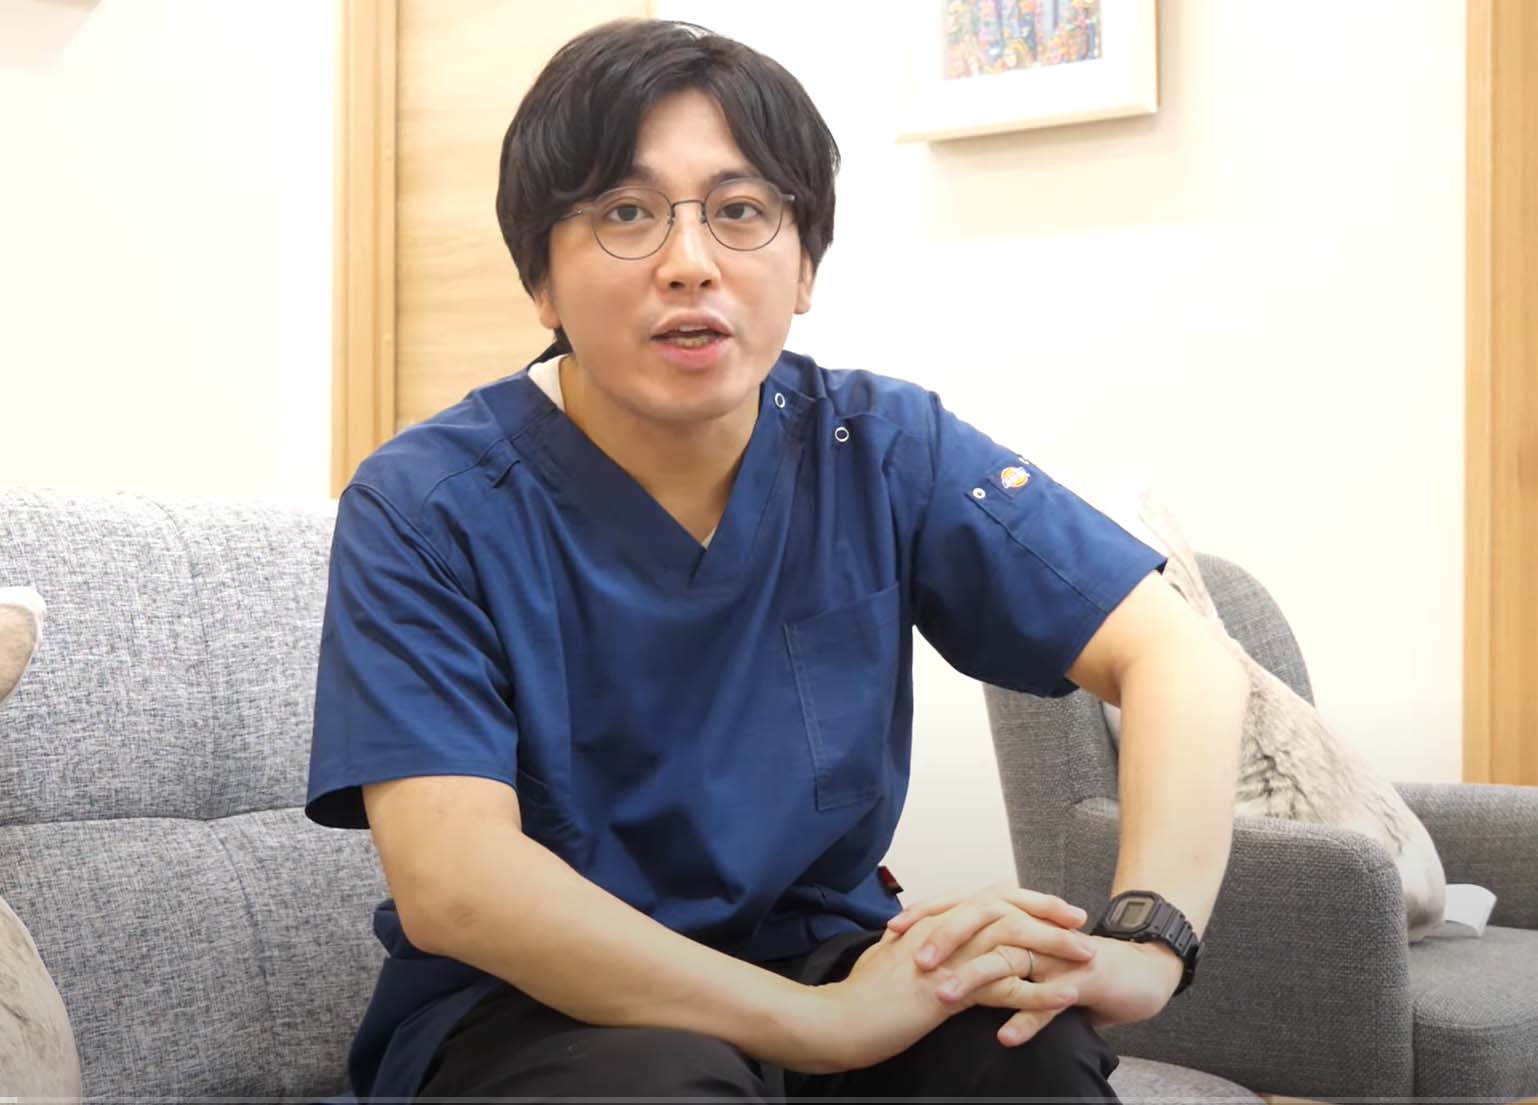 “陰キャ”で元医官の町医者・益田裕介さんが、YouTuberとして多くの人を癒すまで